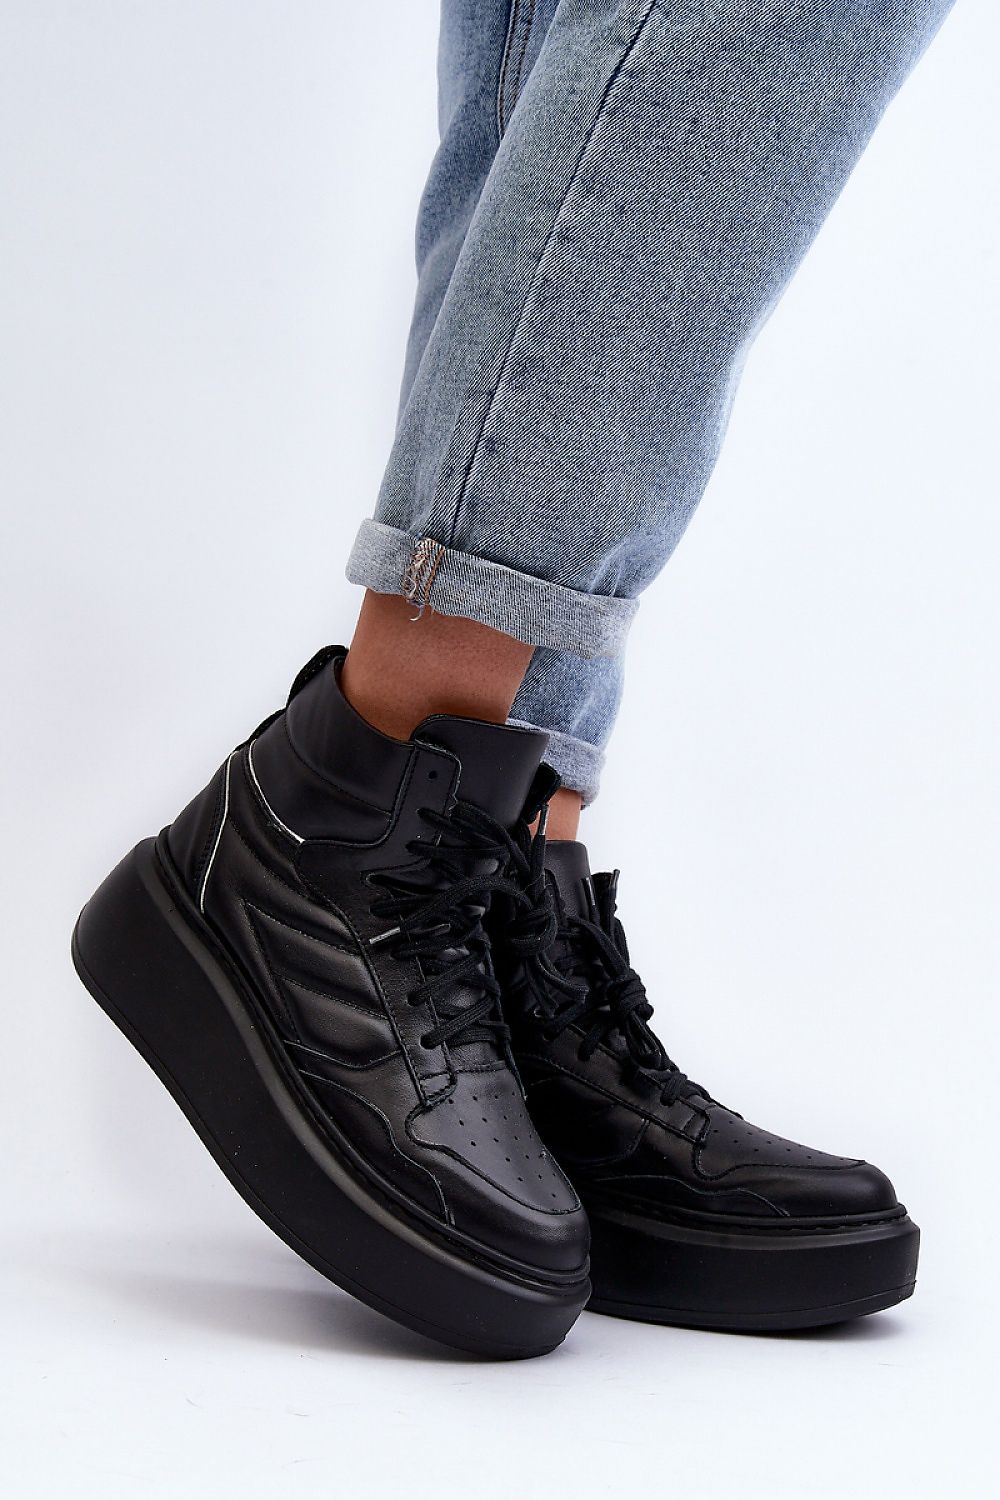 TEEK - Elavate Solid Sneakers SHOES TEEK MH black 6.5 